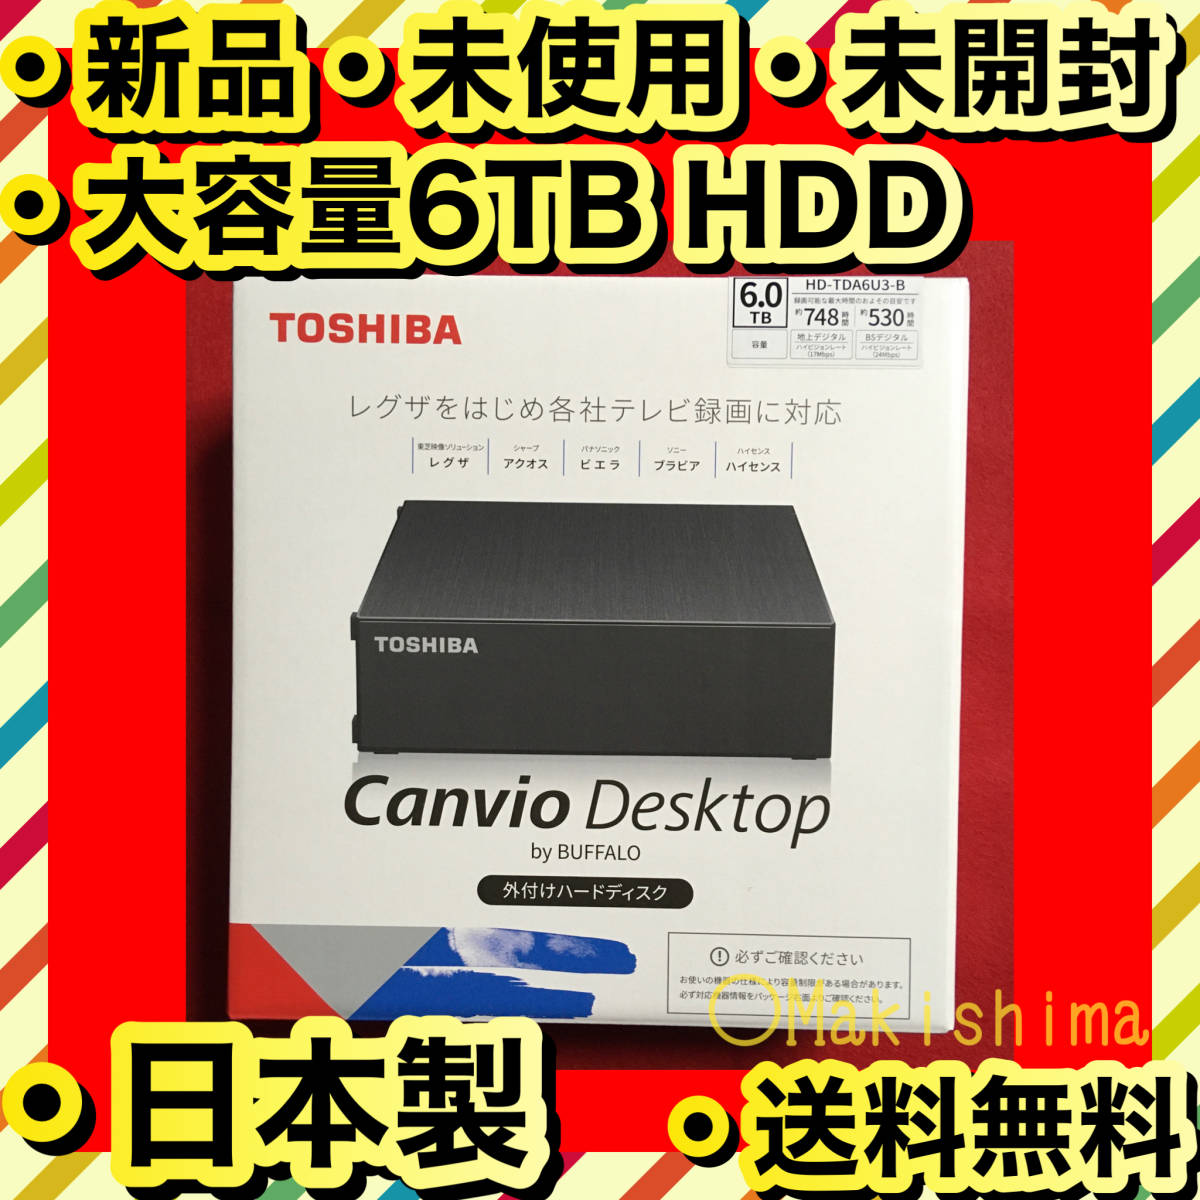 バッファロー CANVIO DESKTOP HD-TDA6U3-B [ブラック] オークション 